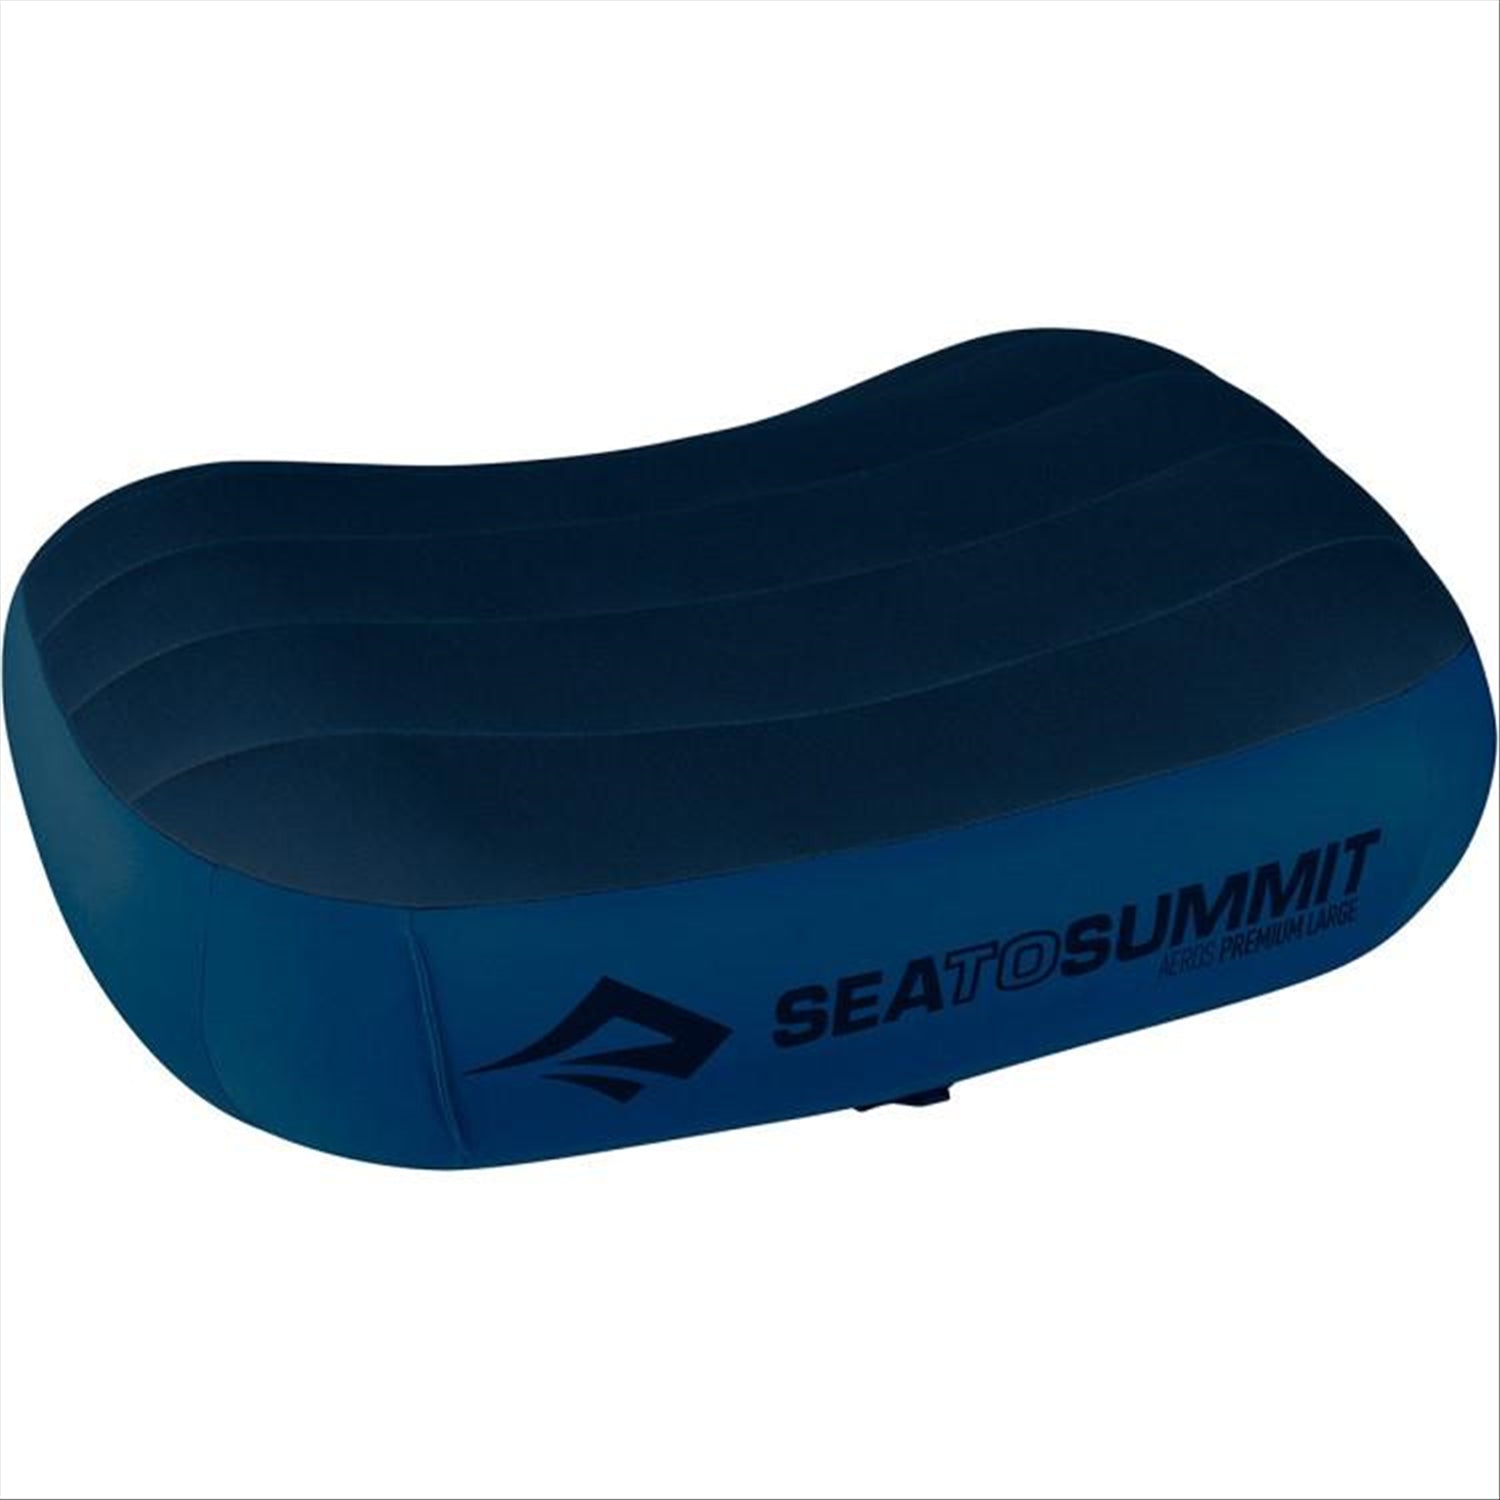 Sea to Summit Sea To Summit Aeros Premium Pillow